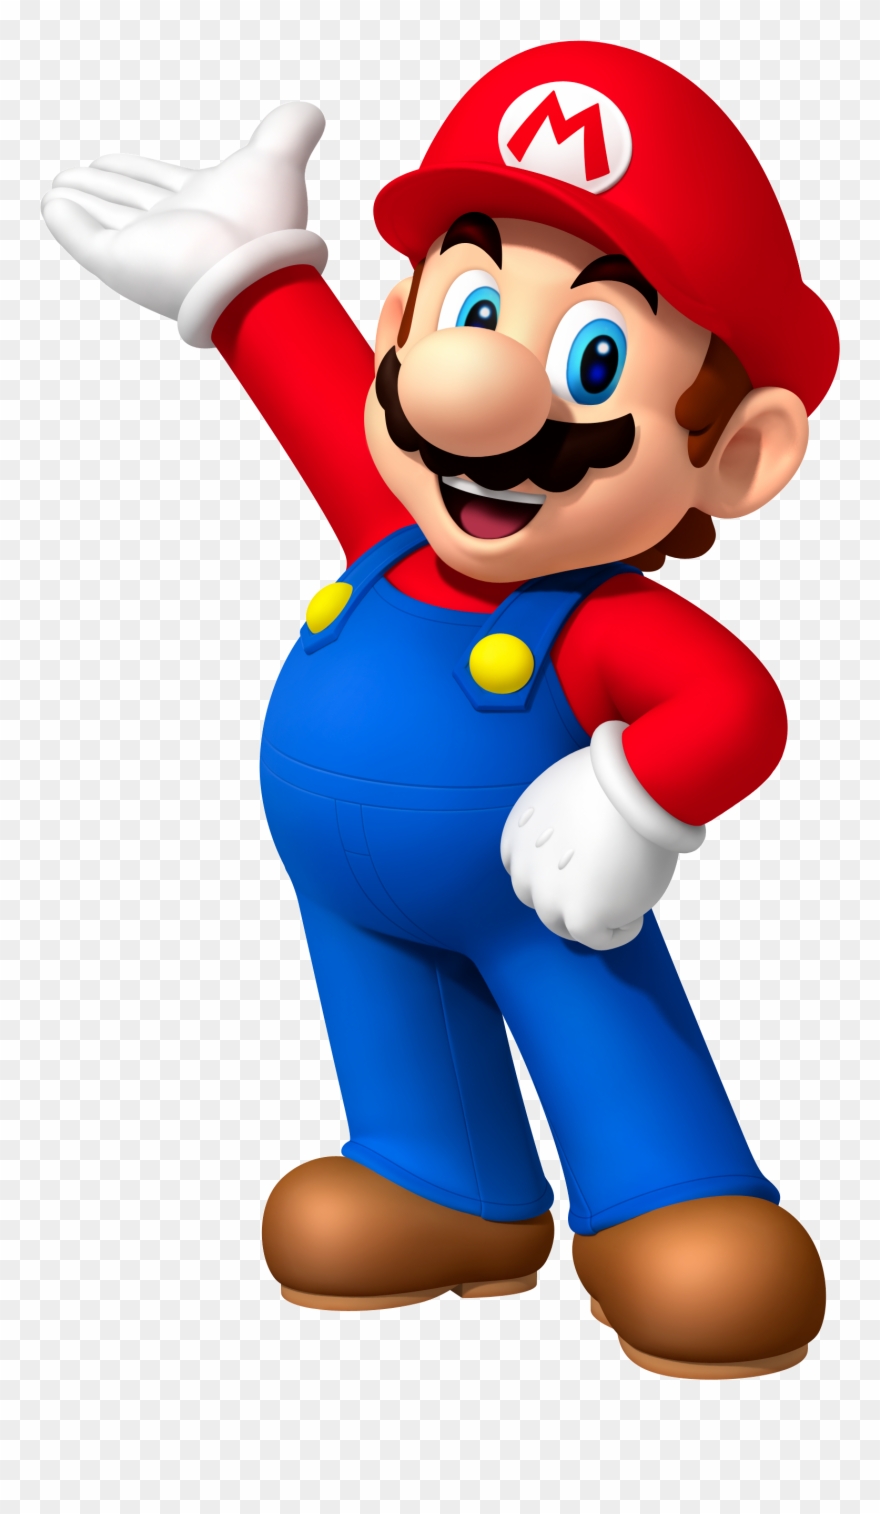 Mario clipart photos.